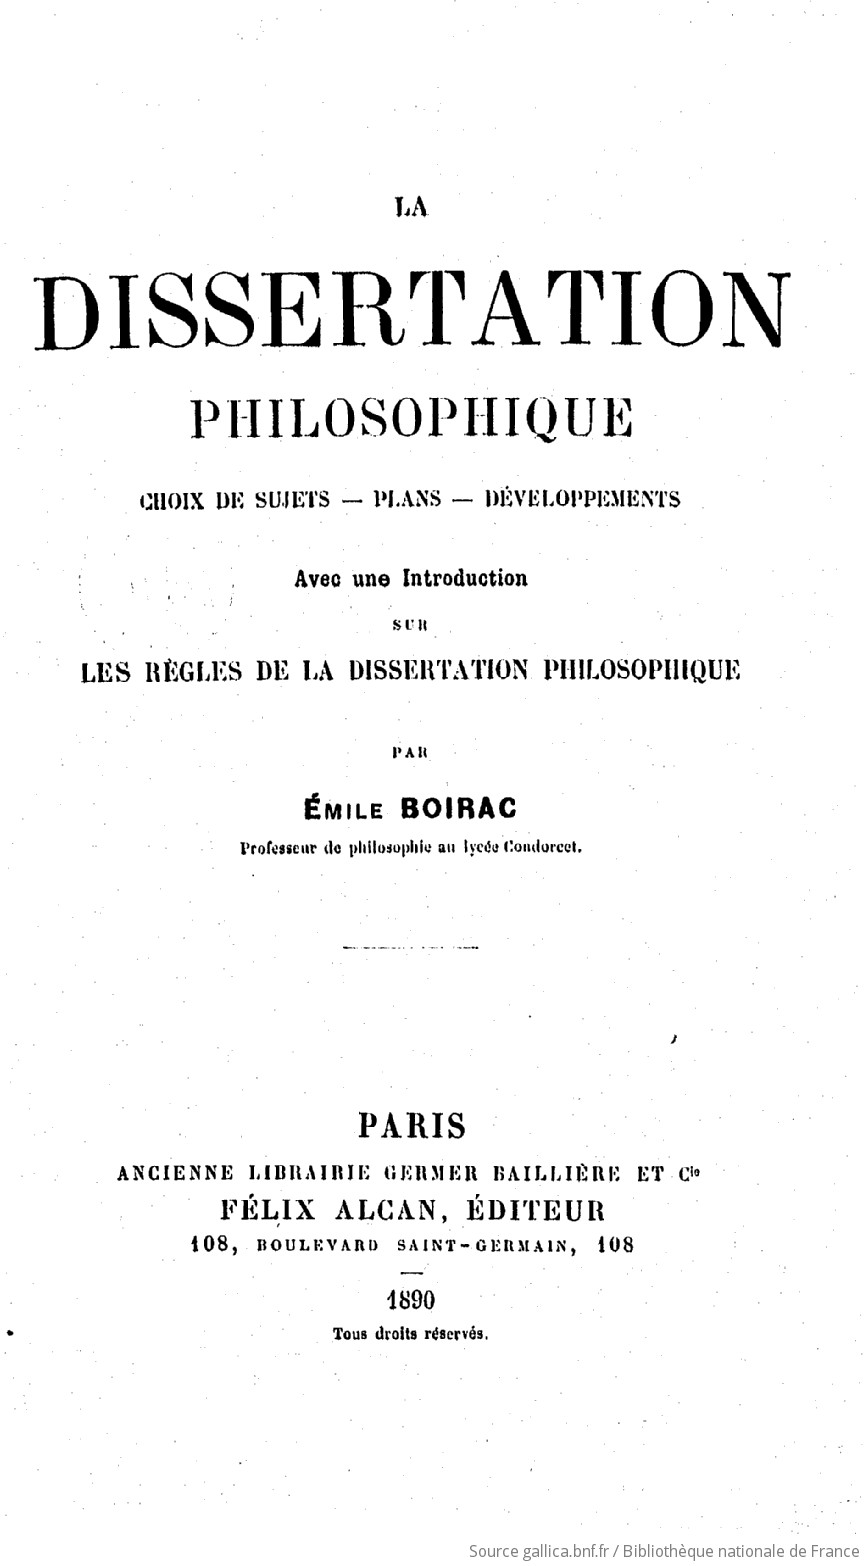 Conclusion dissertation philosophique exemple